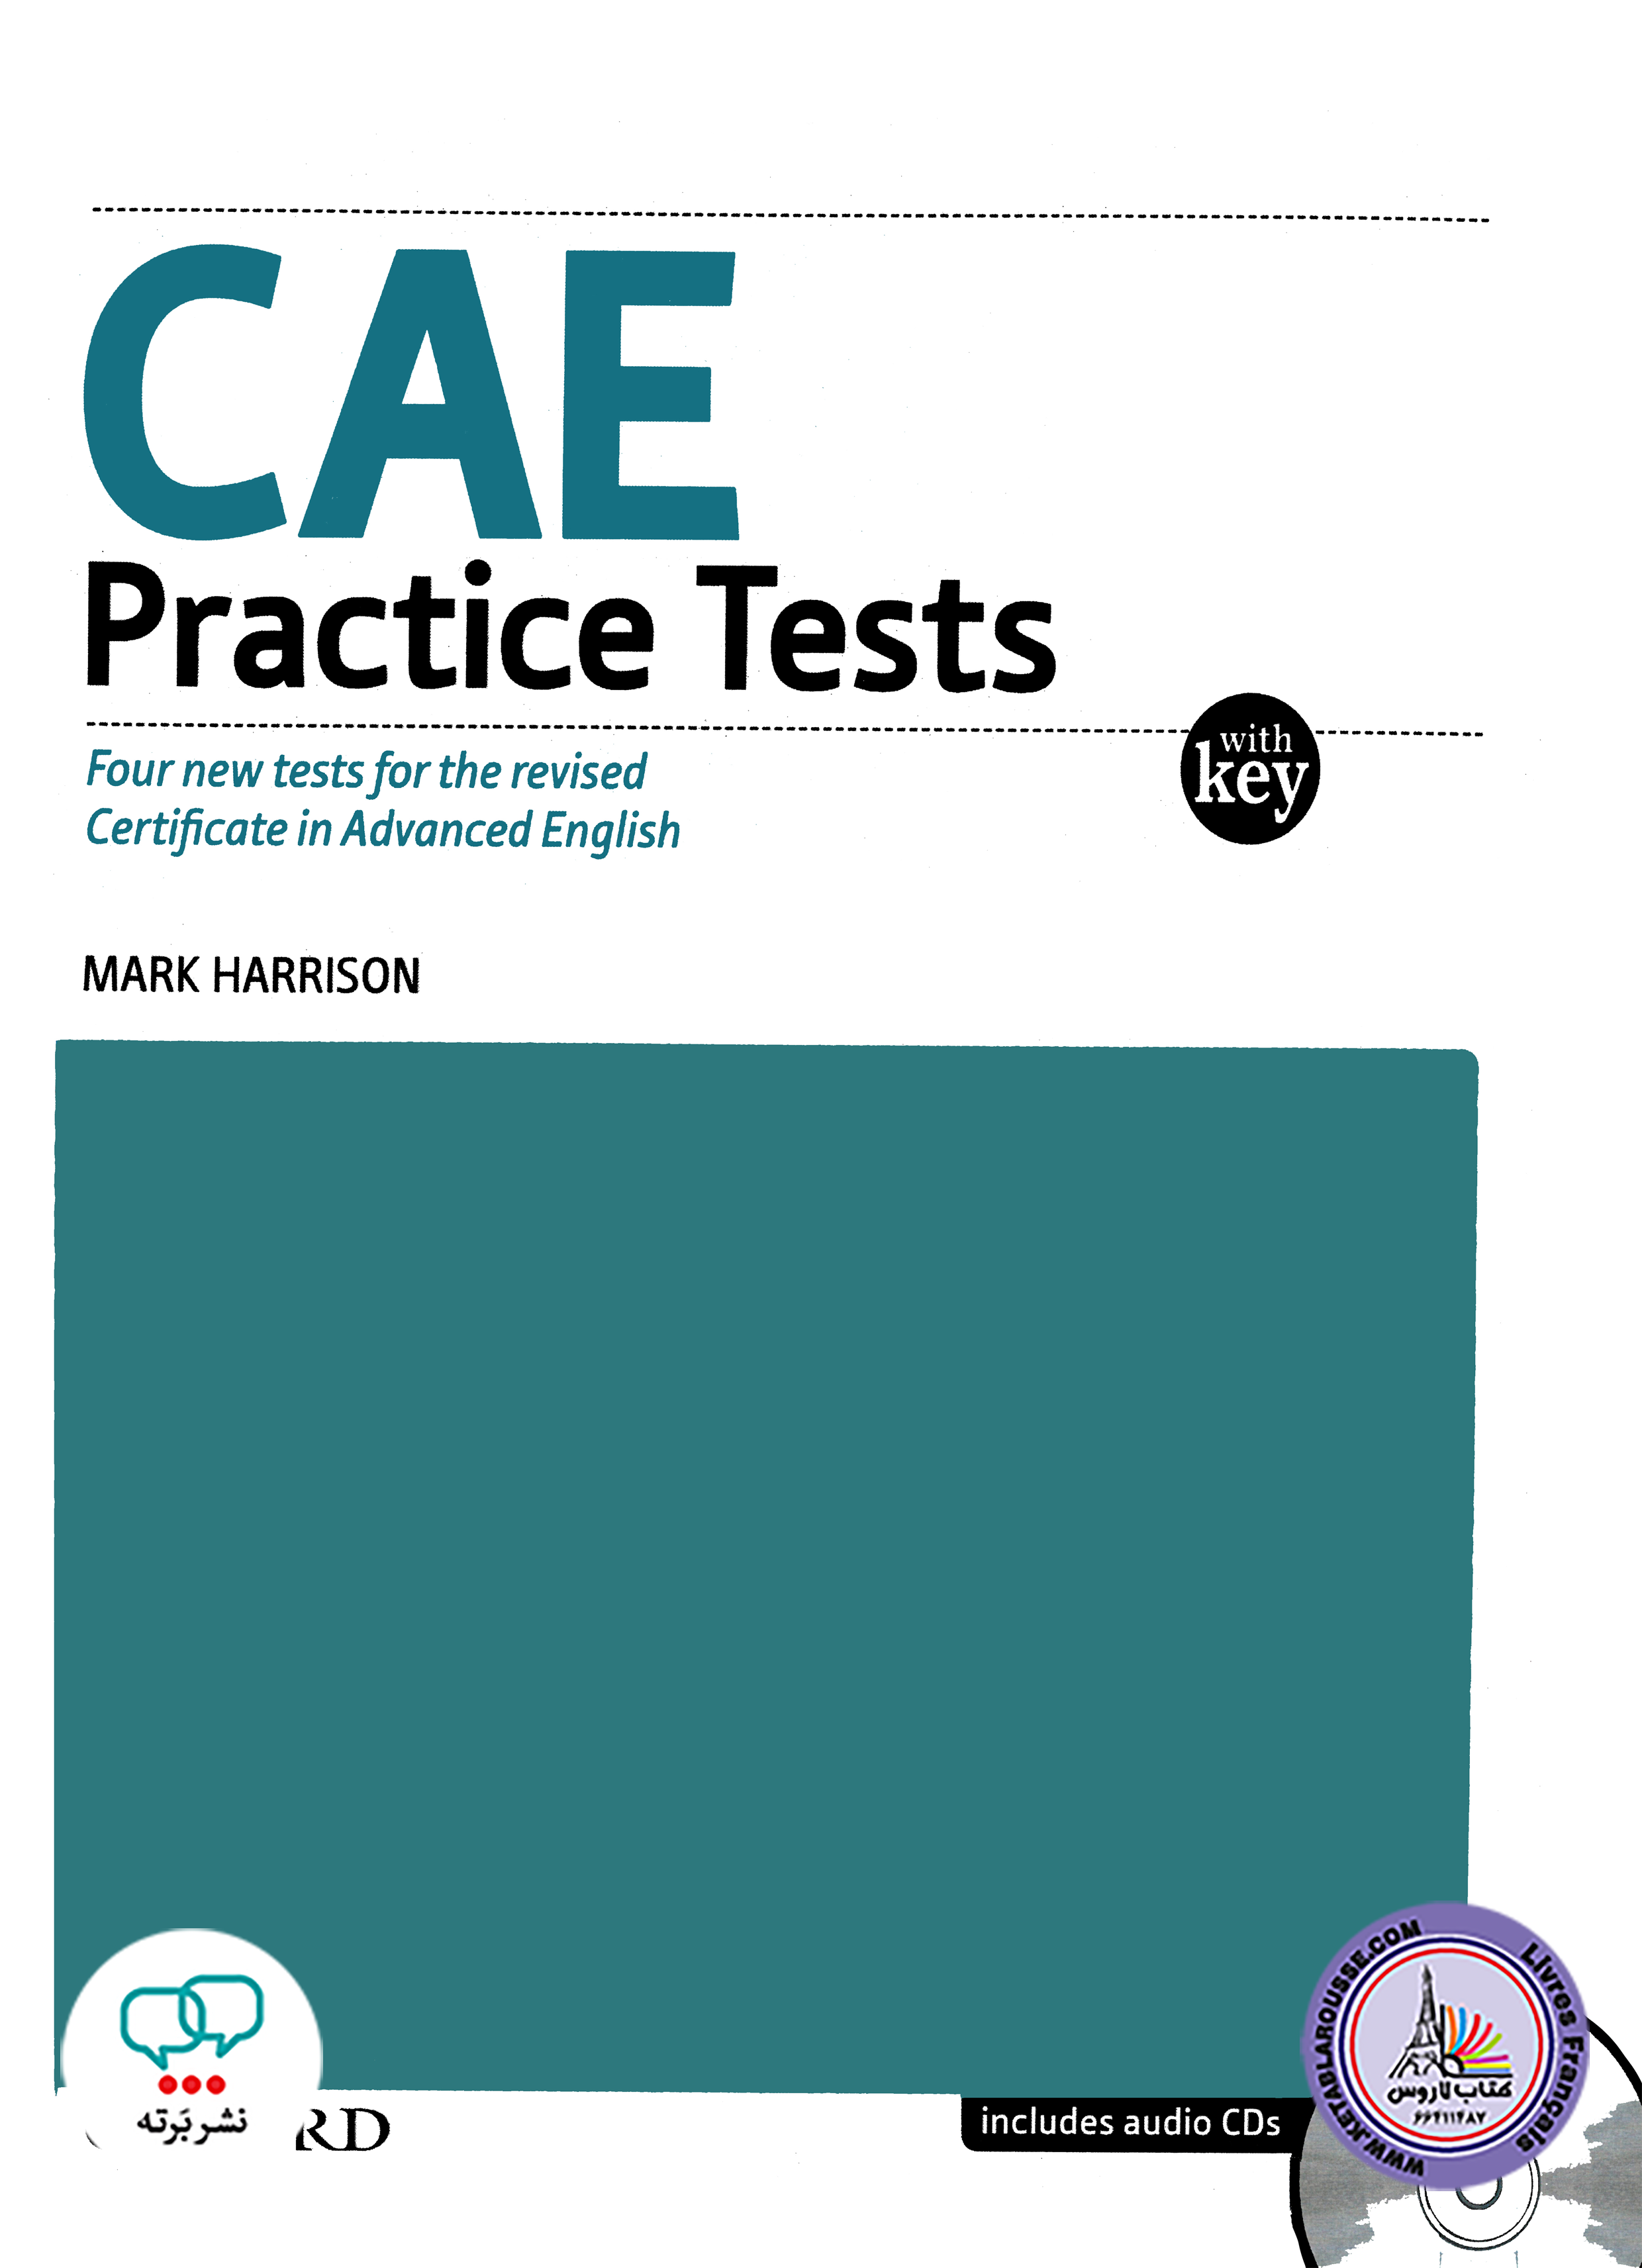 کتاب آزمون انگلیسی CAE Practice Tests